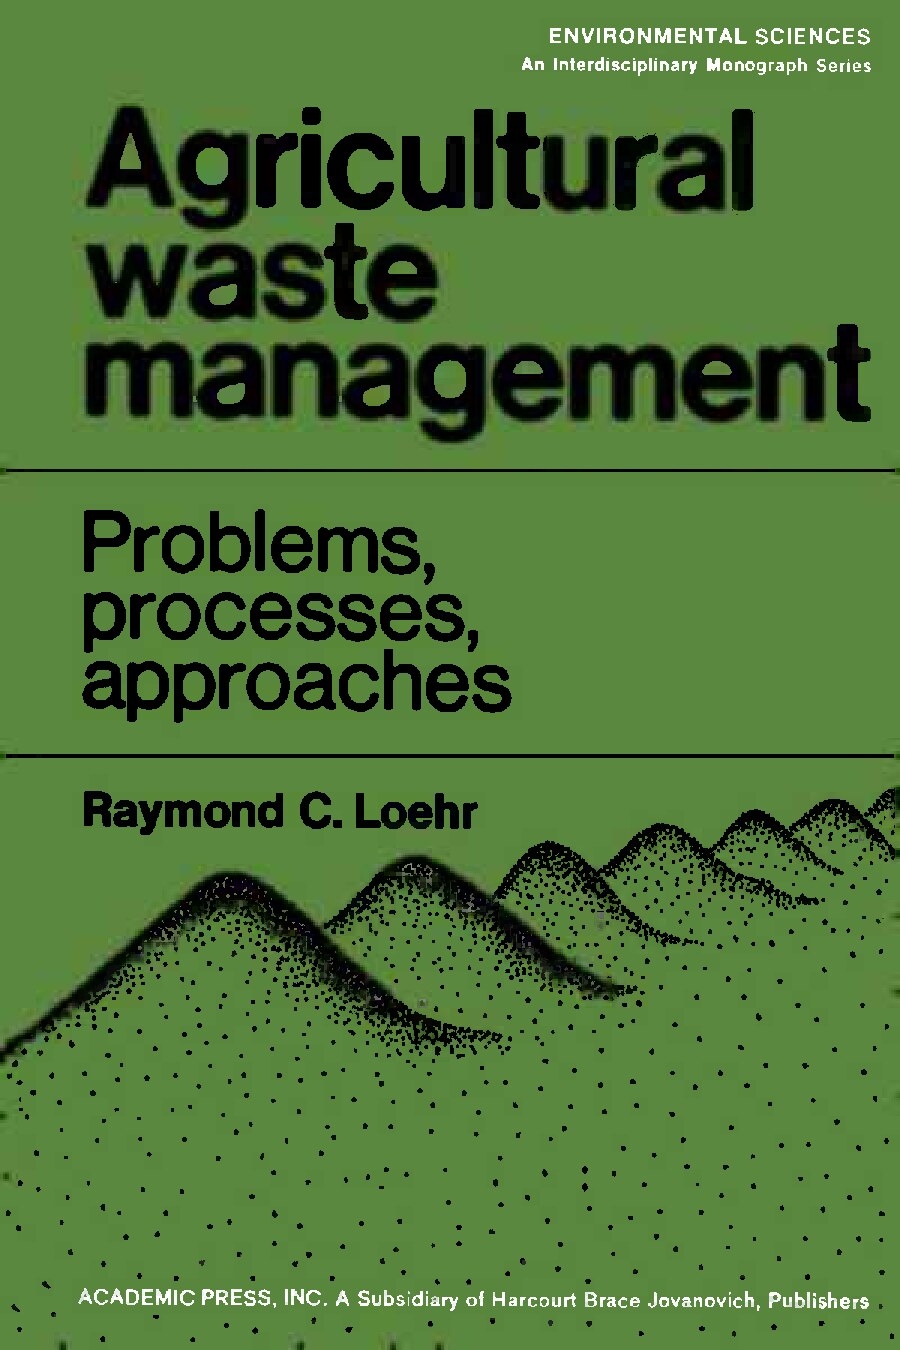 Agricultural Waste Management